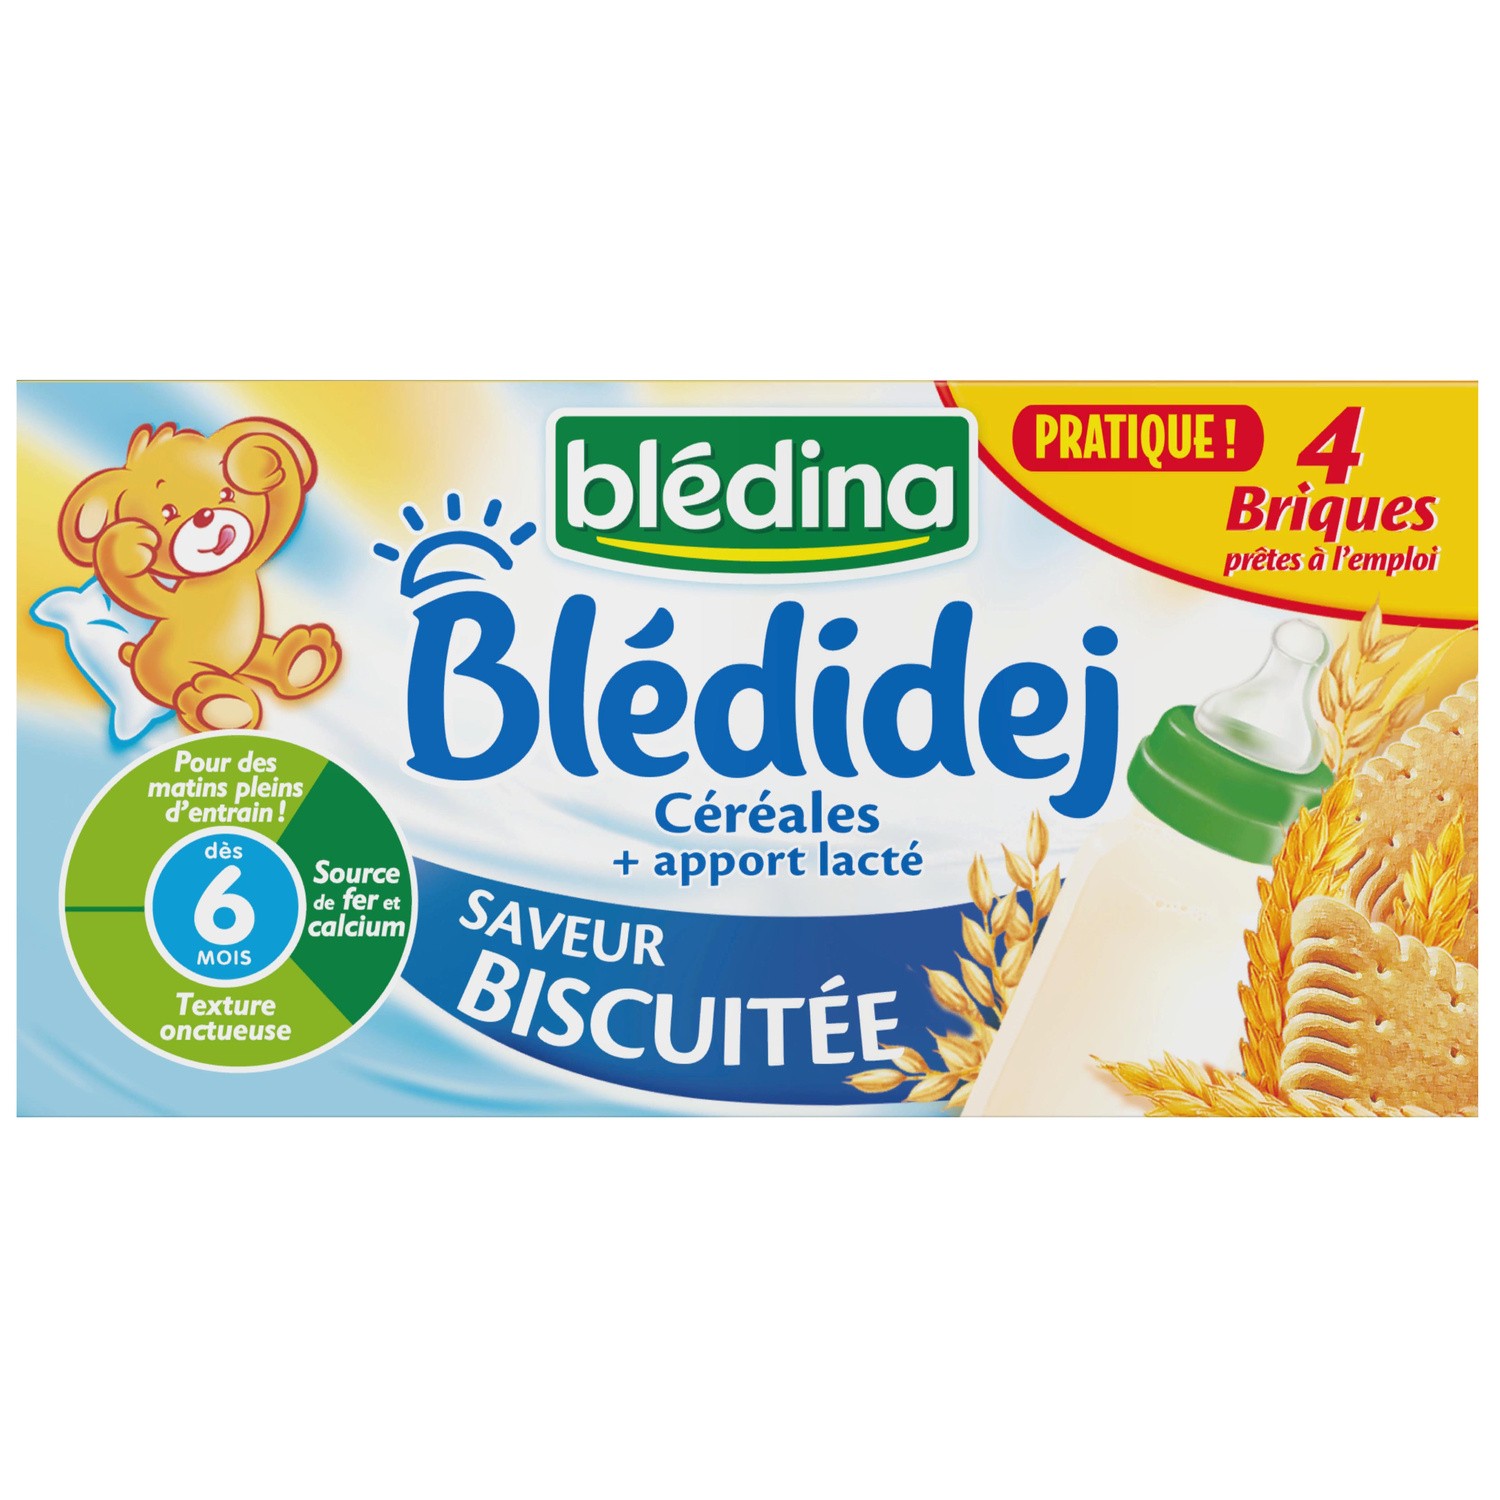 Blédidej Croissance Choco-vanille dès 12 mois BLEDINA : Comparateur, Avis,  Prix